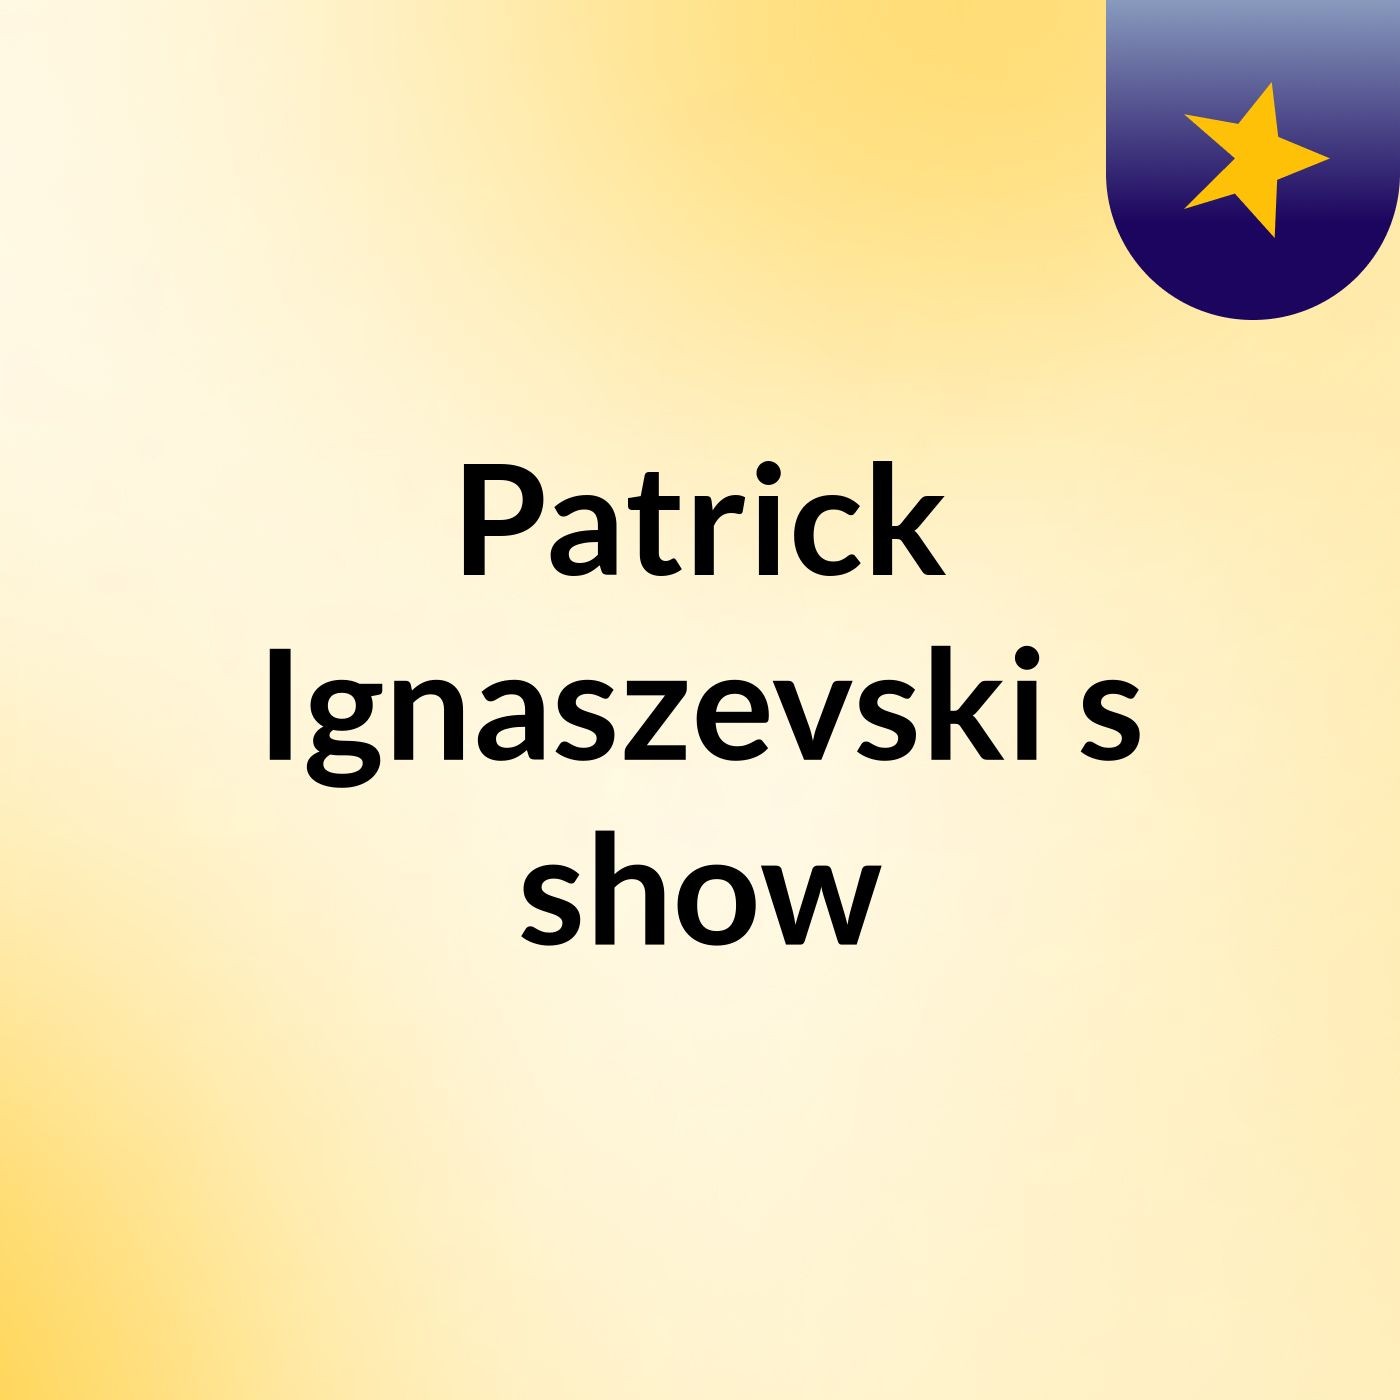 Patrick Ignaszevski's show